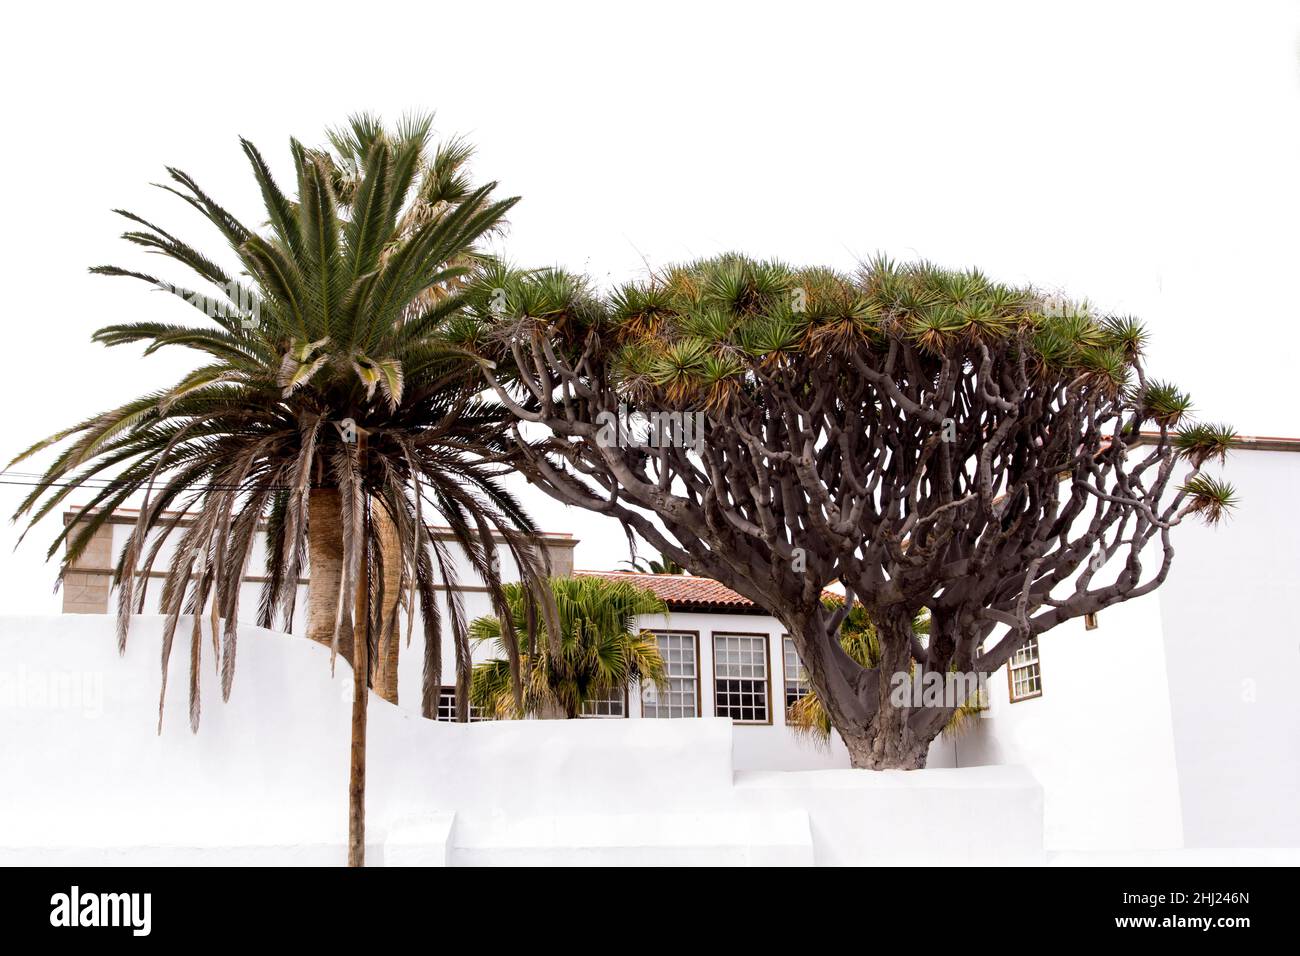 Albero del drago e palma in un cortile spagnolo. Architettura tradizionale bianca. Tenerife, Spagna Foto Stock